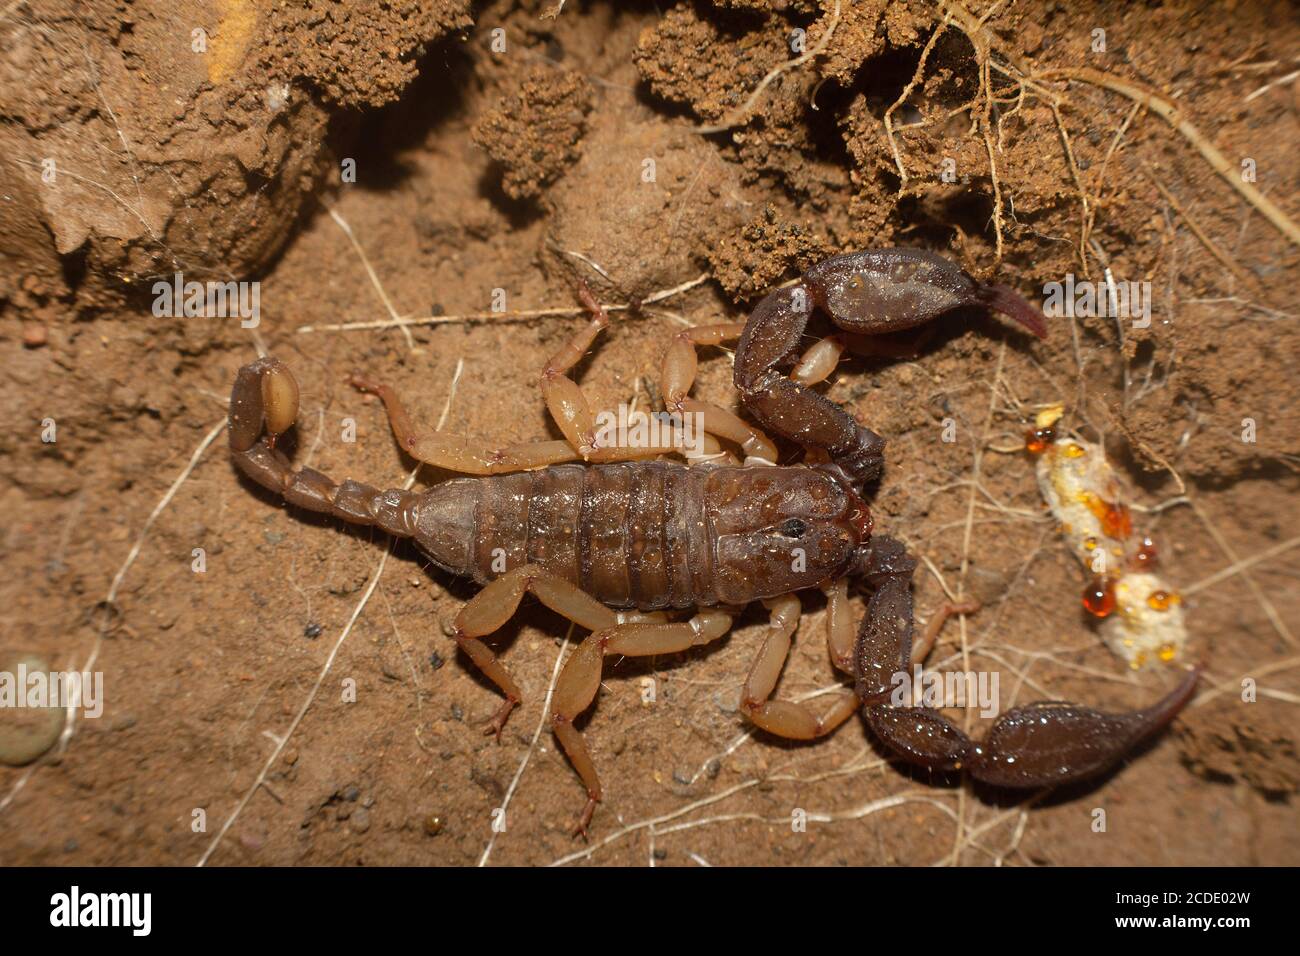 Euscorpuis sp., comunemente chiamati piccoli scorpioni di legno. Corbett, Uttarakhand, India Foto Stock